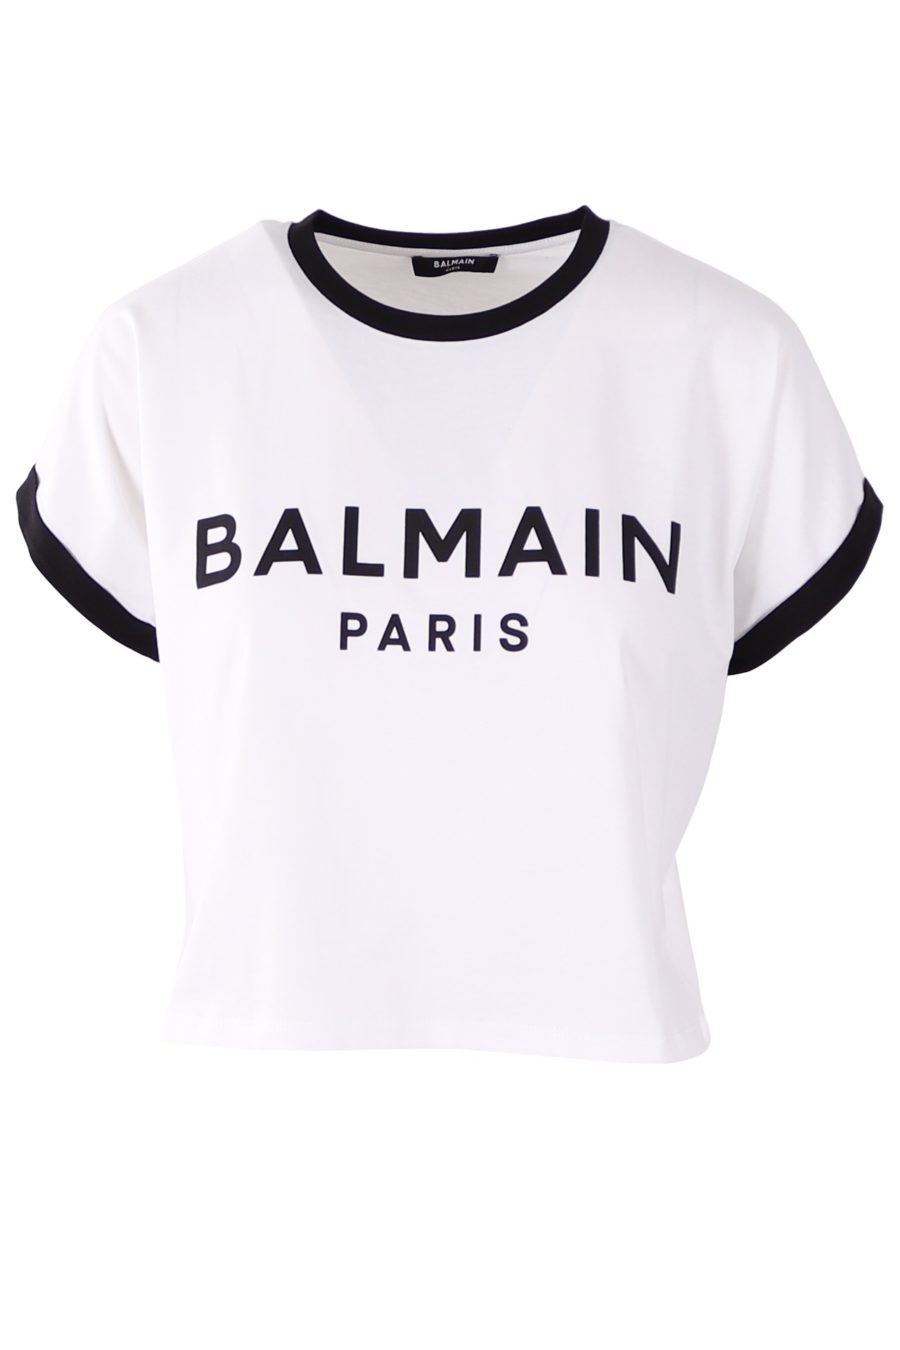 Balmain T-shirt curta branca com logótipo preto flocado - 2cb284172dce74a8e50699d332c31511a4f799ee